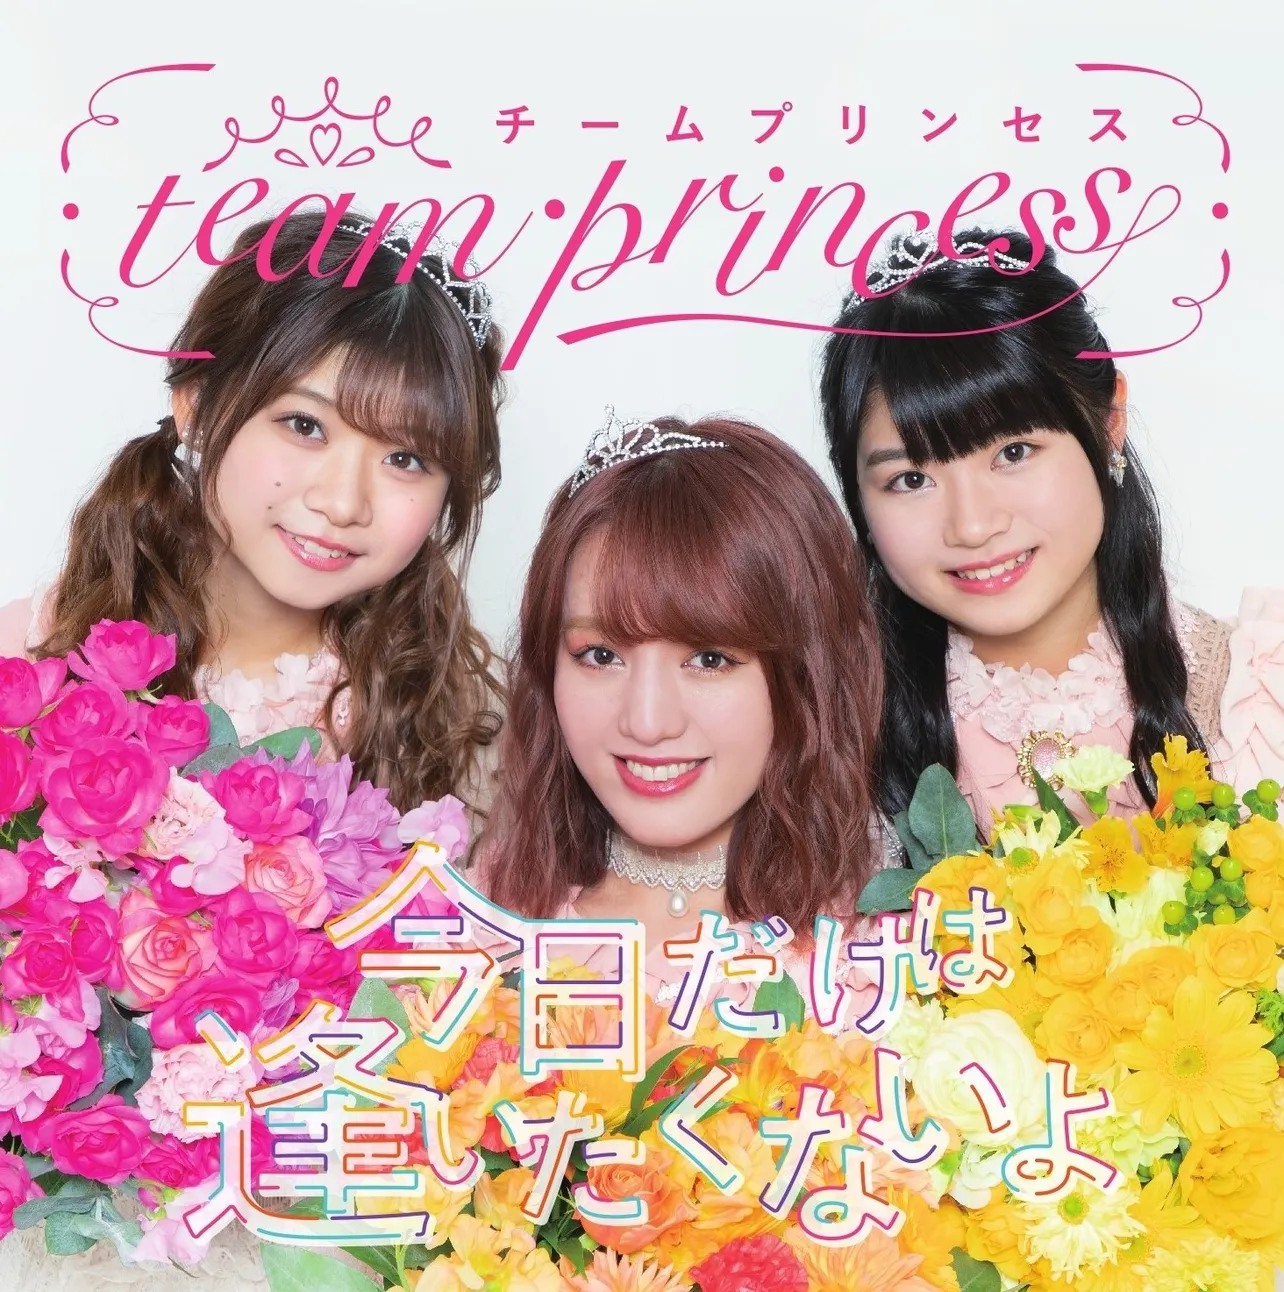 アップアップガールズ(仮)の関根梓、アップアップガールズ(2)の橋村理子と中川千尋によるユニット「team・princess」がシングル 「今日だけは逢いたくないよ」をリリース